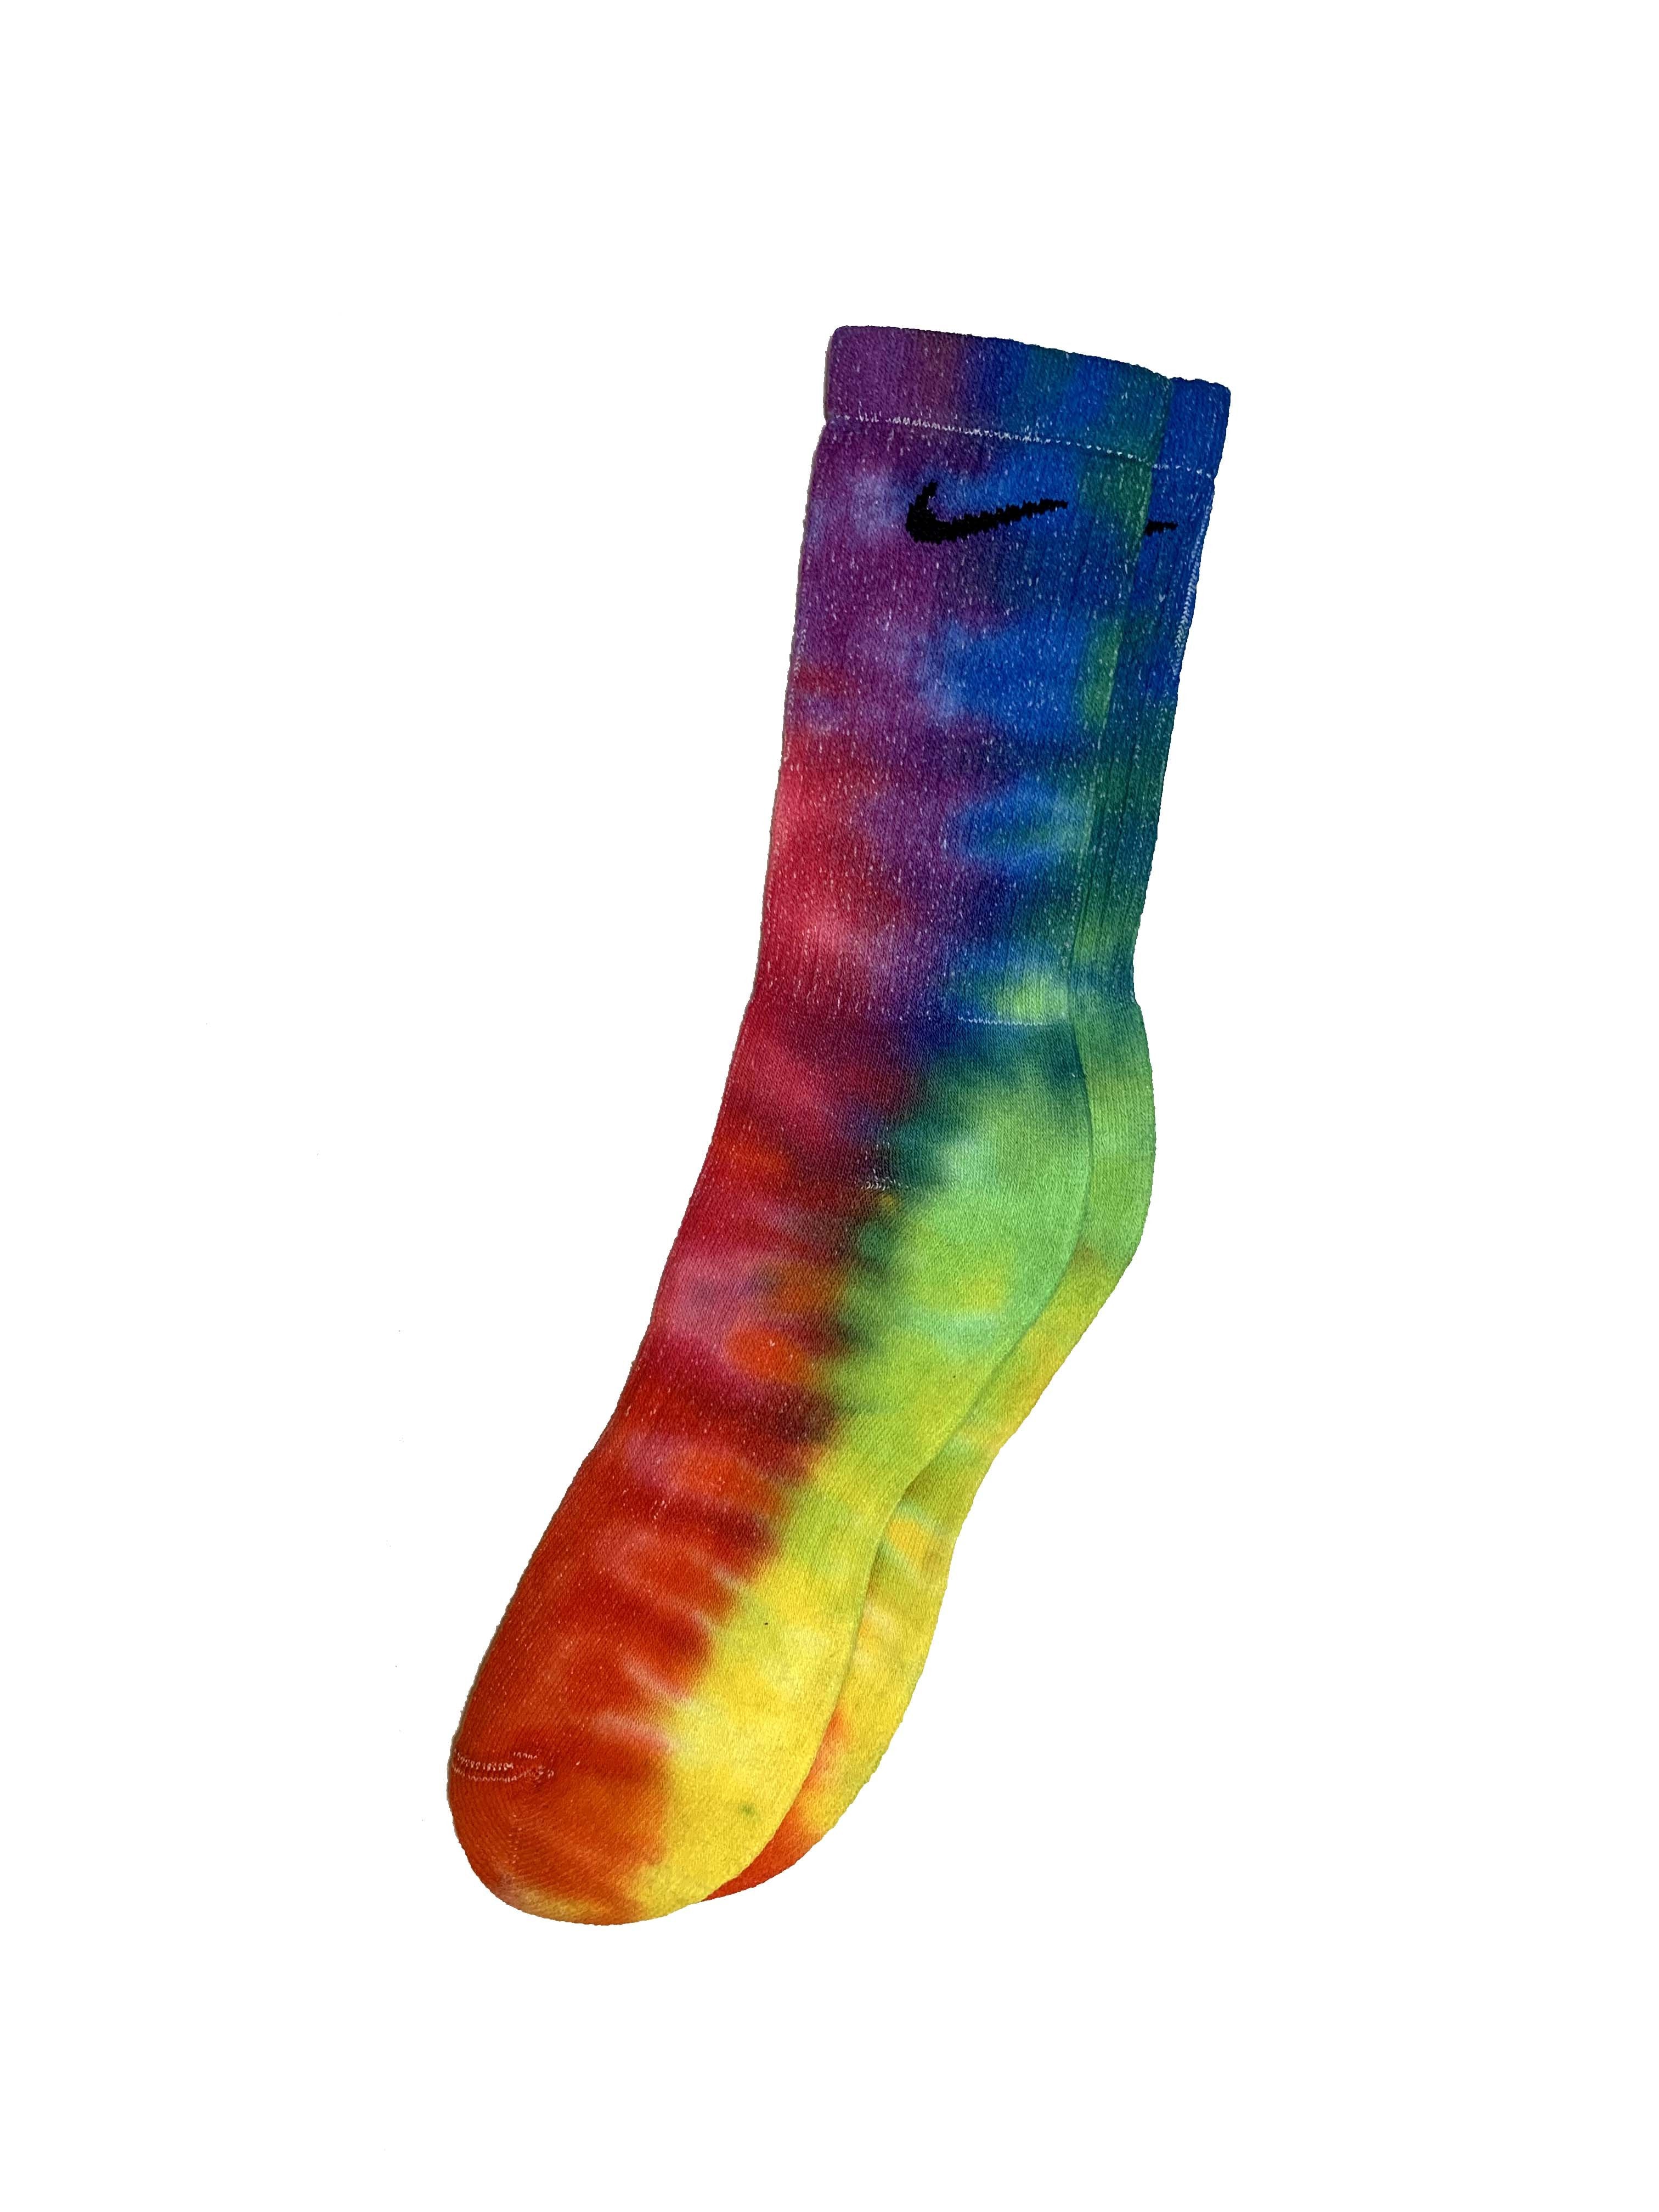 nike socks rainbow